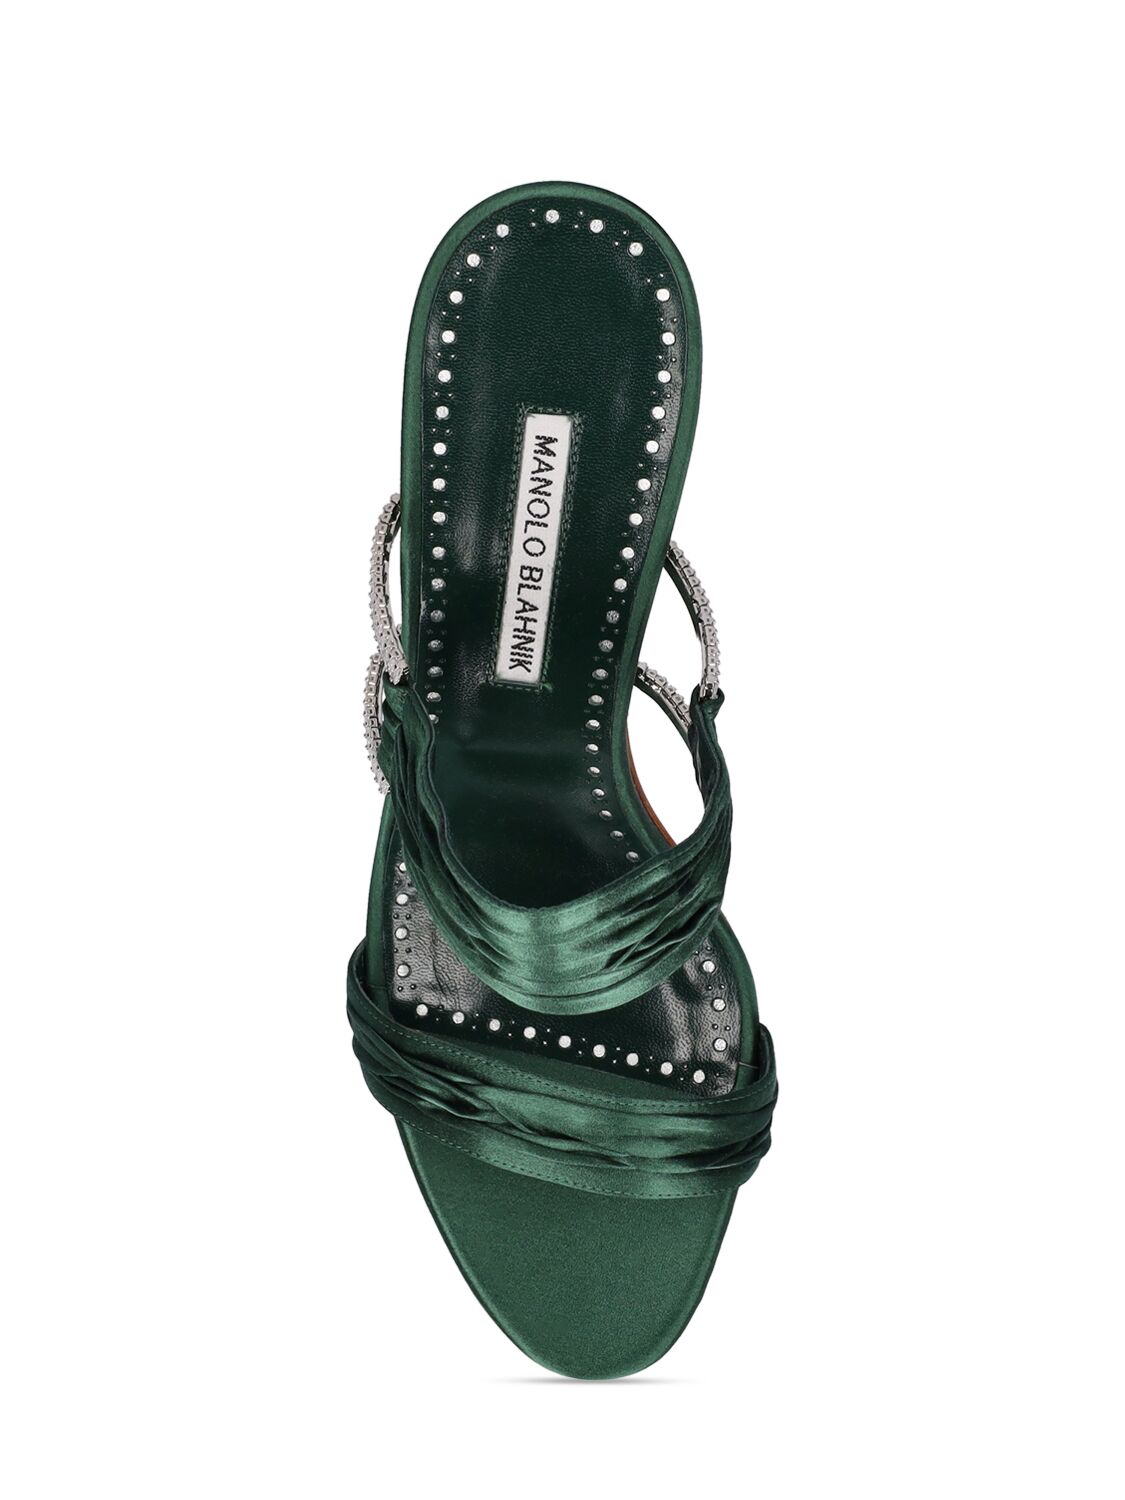 Shop Manolo Blahnik 70mm Chinap Satin Sandals In Dark Green